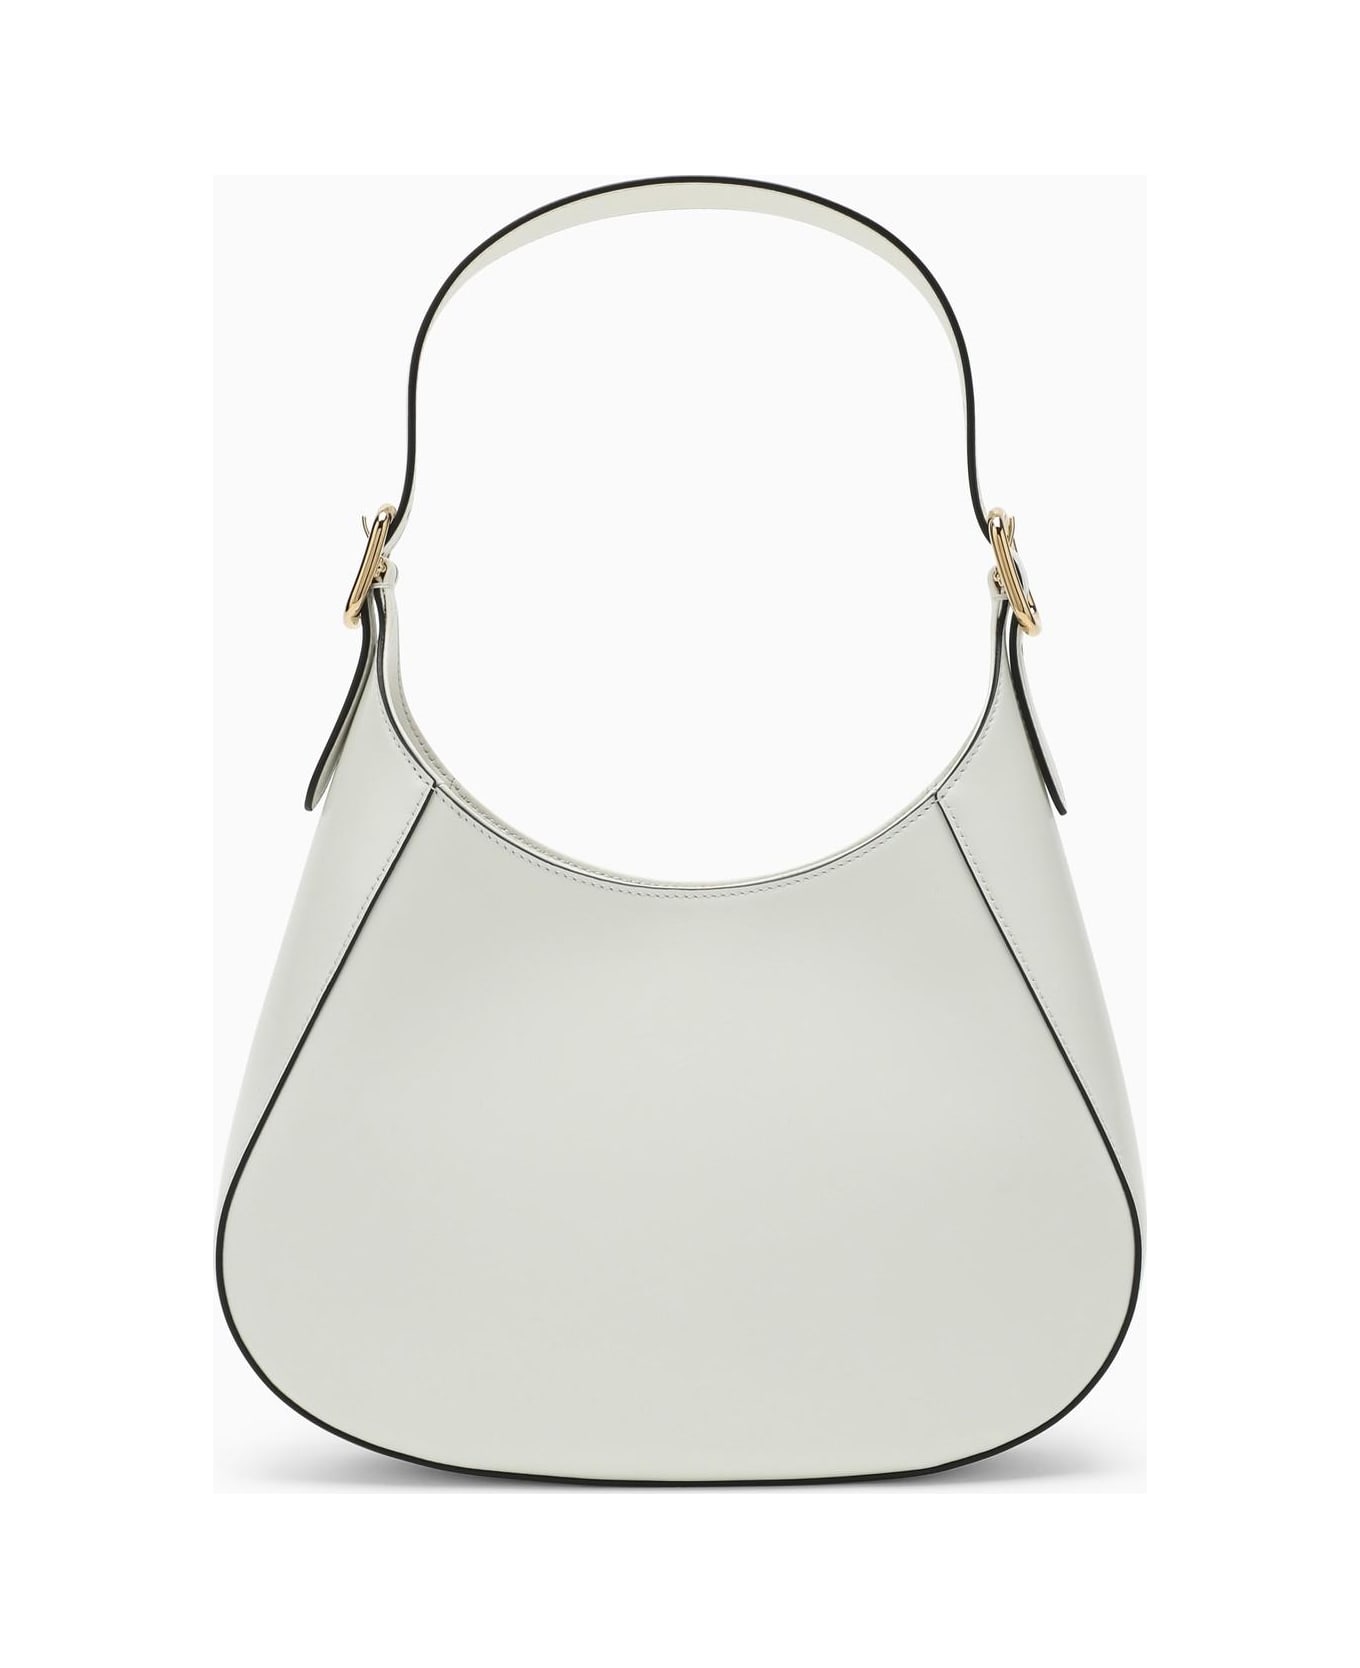 Prada Cleo White Leather Shoulder Bag - BIANCO N